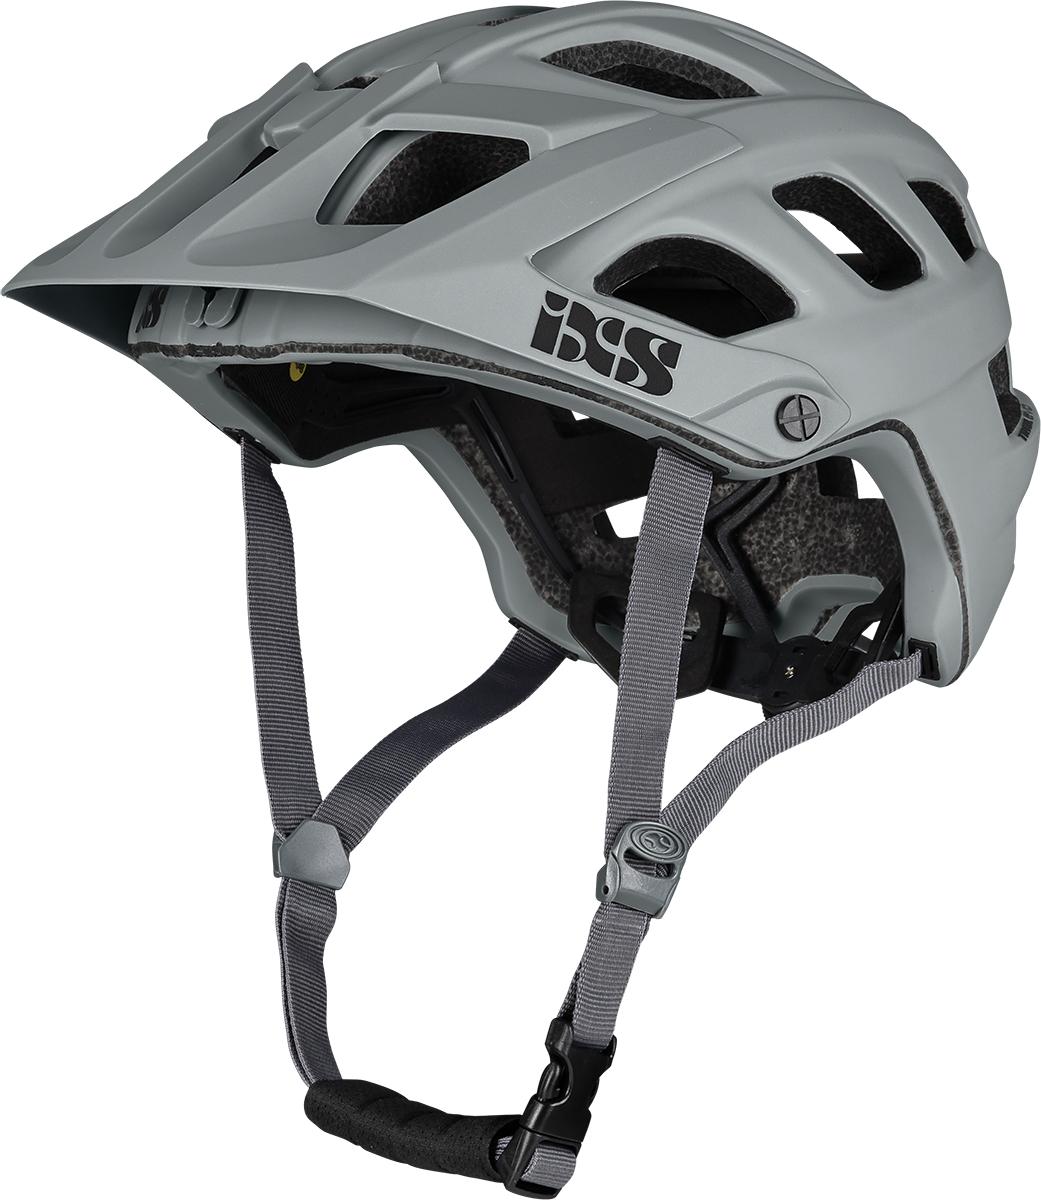 Ixs Trail Evo Mips Mtb Helmet - Grey